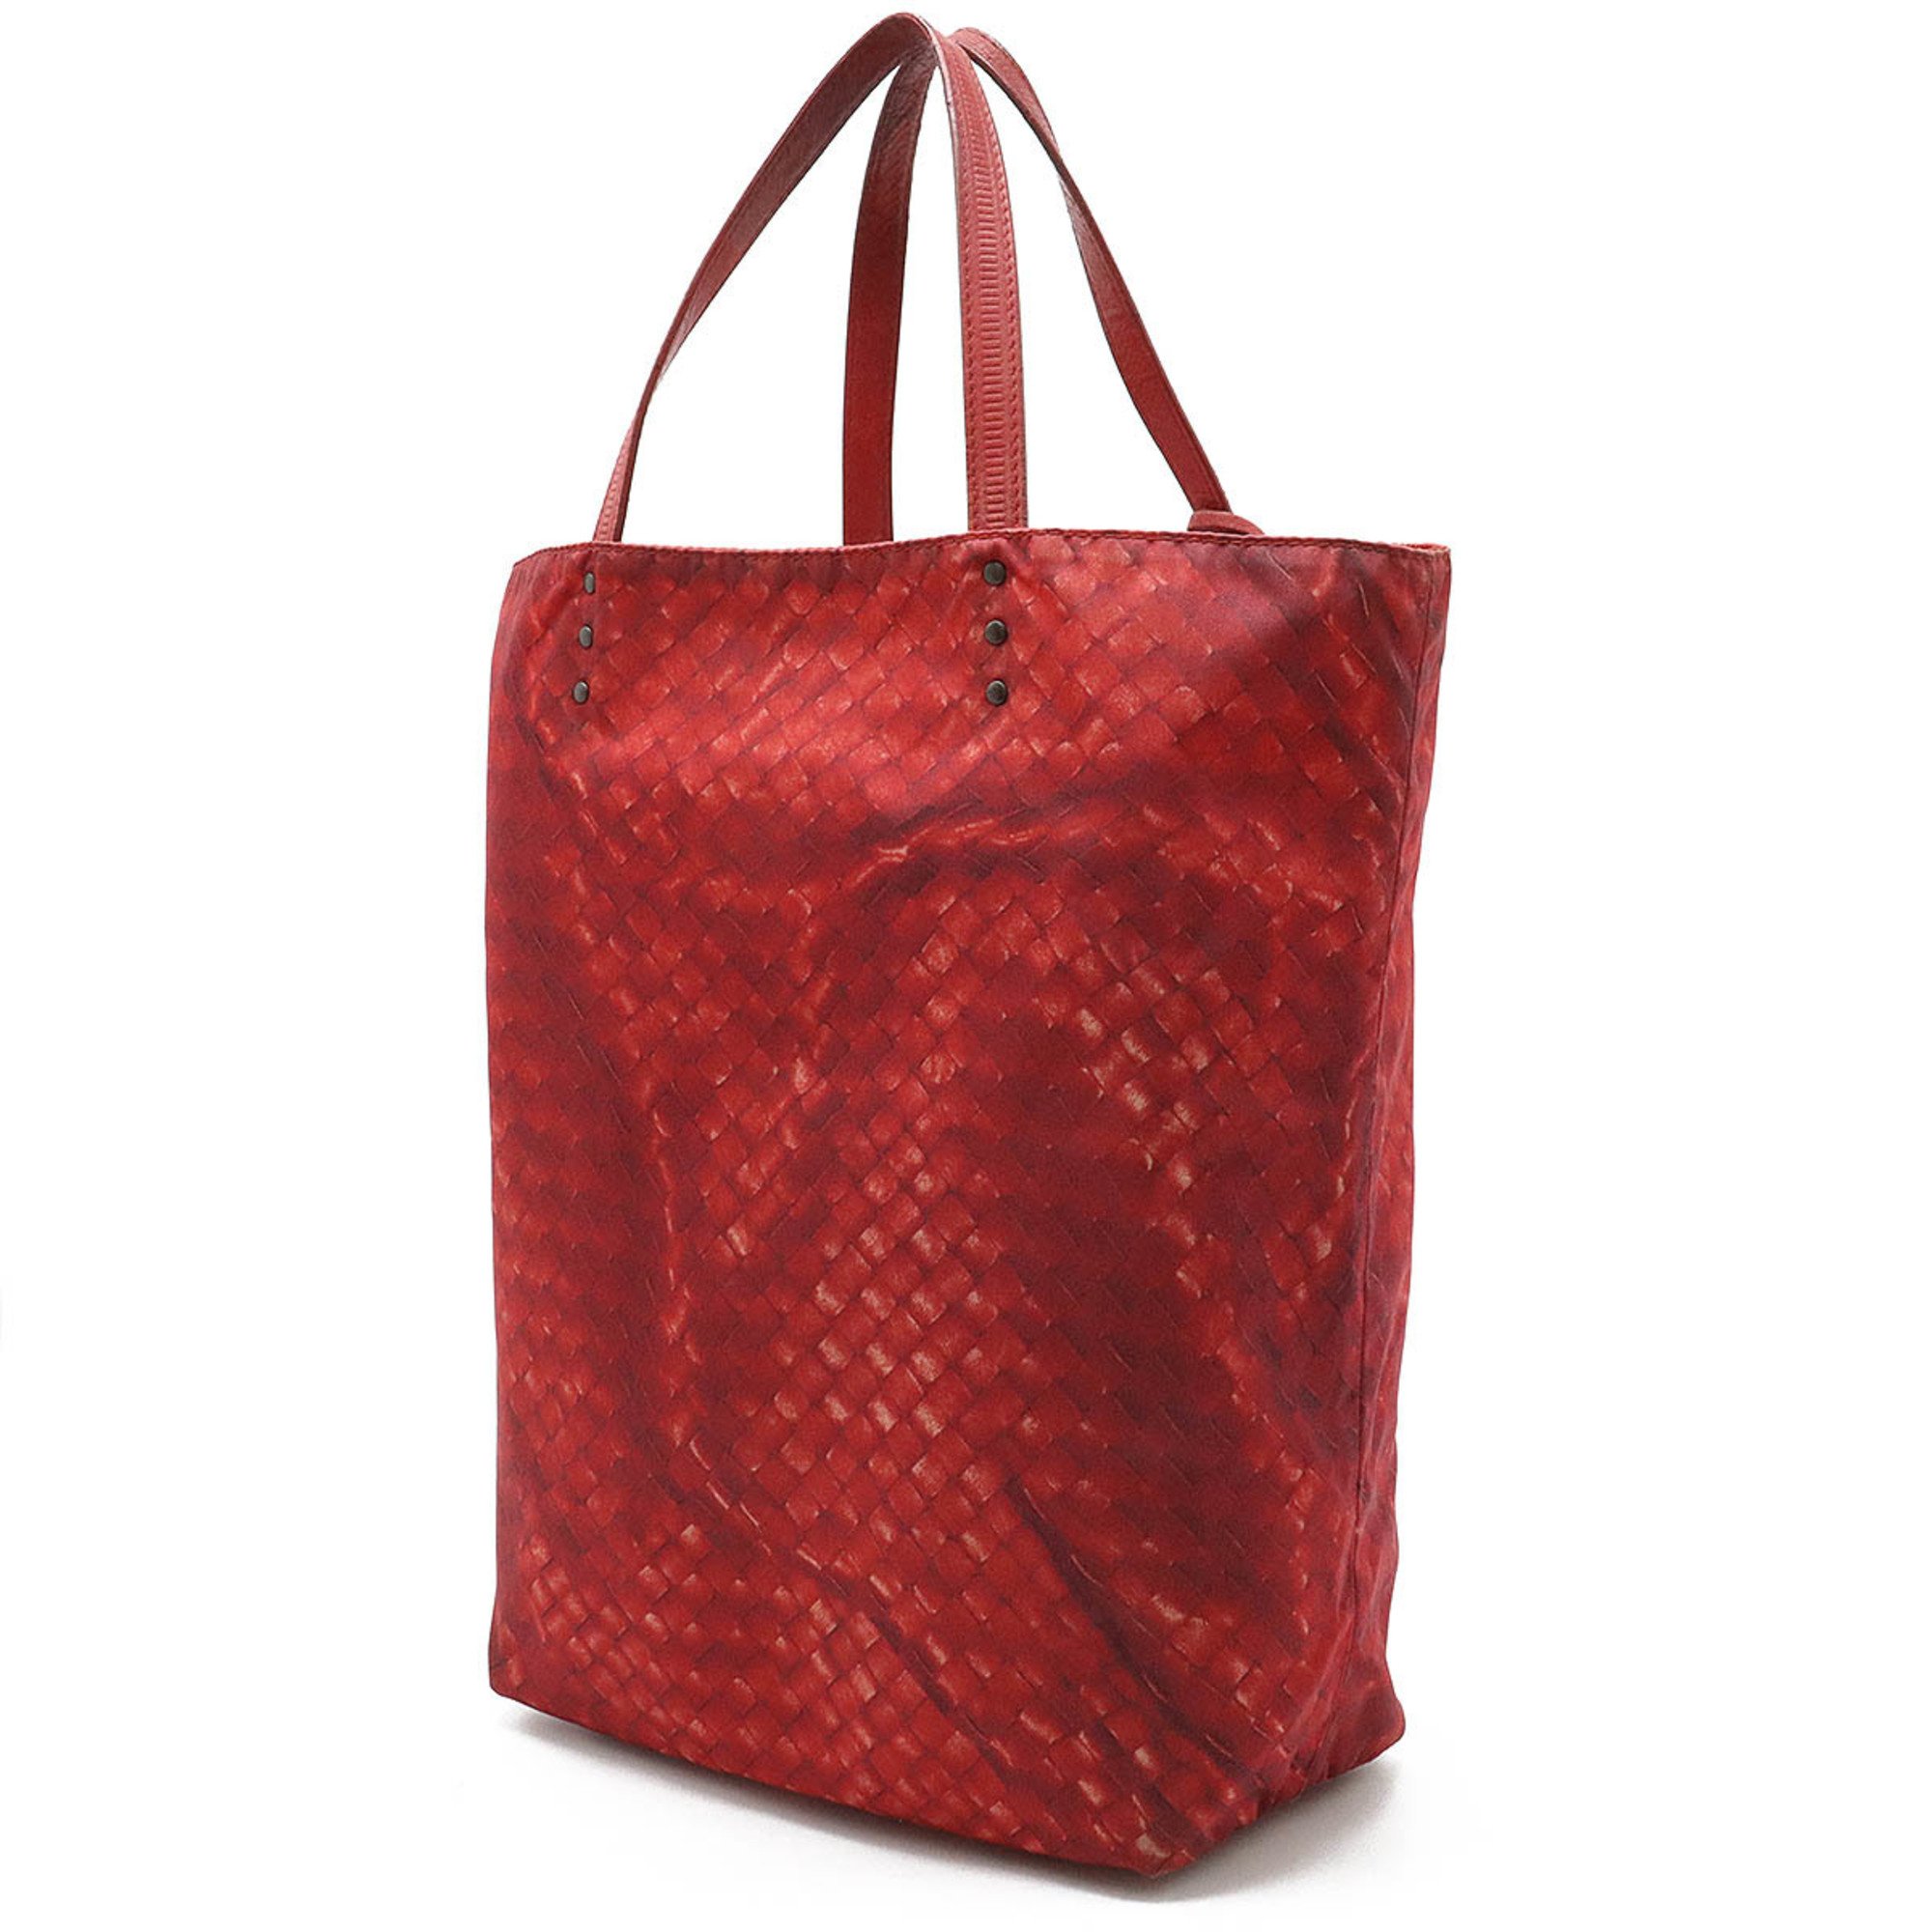 BOTTEGA VENETA Intreccio Illusion Tote Bag Nylon Leather Red 299871